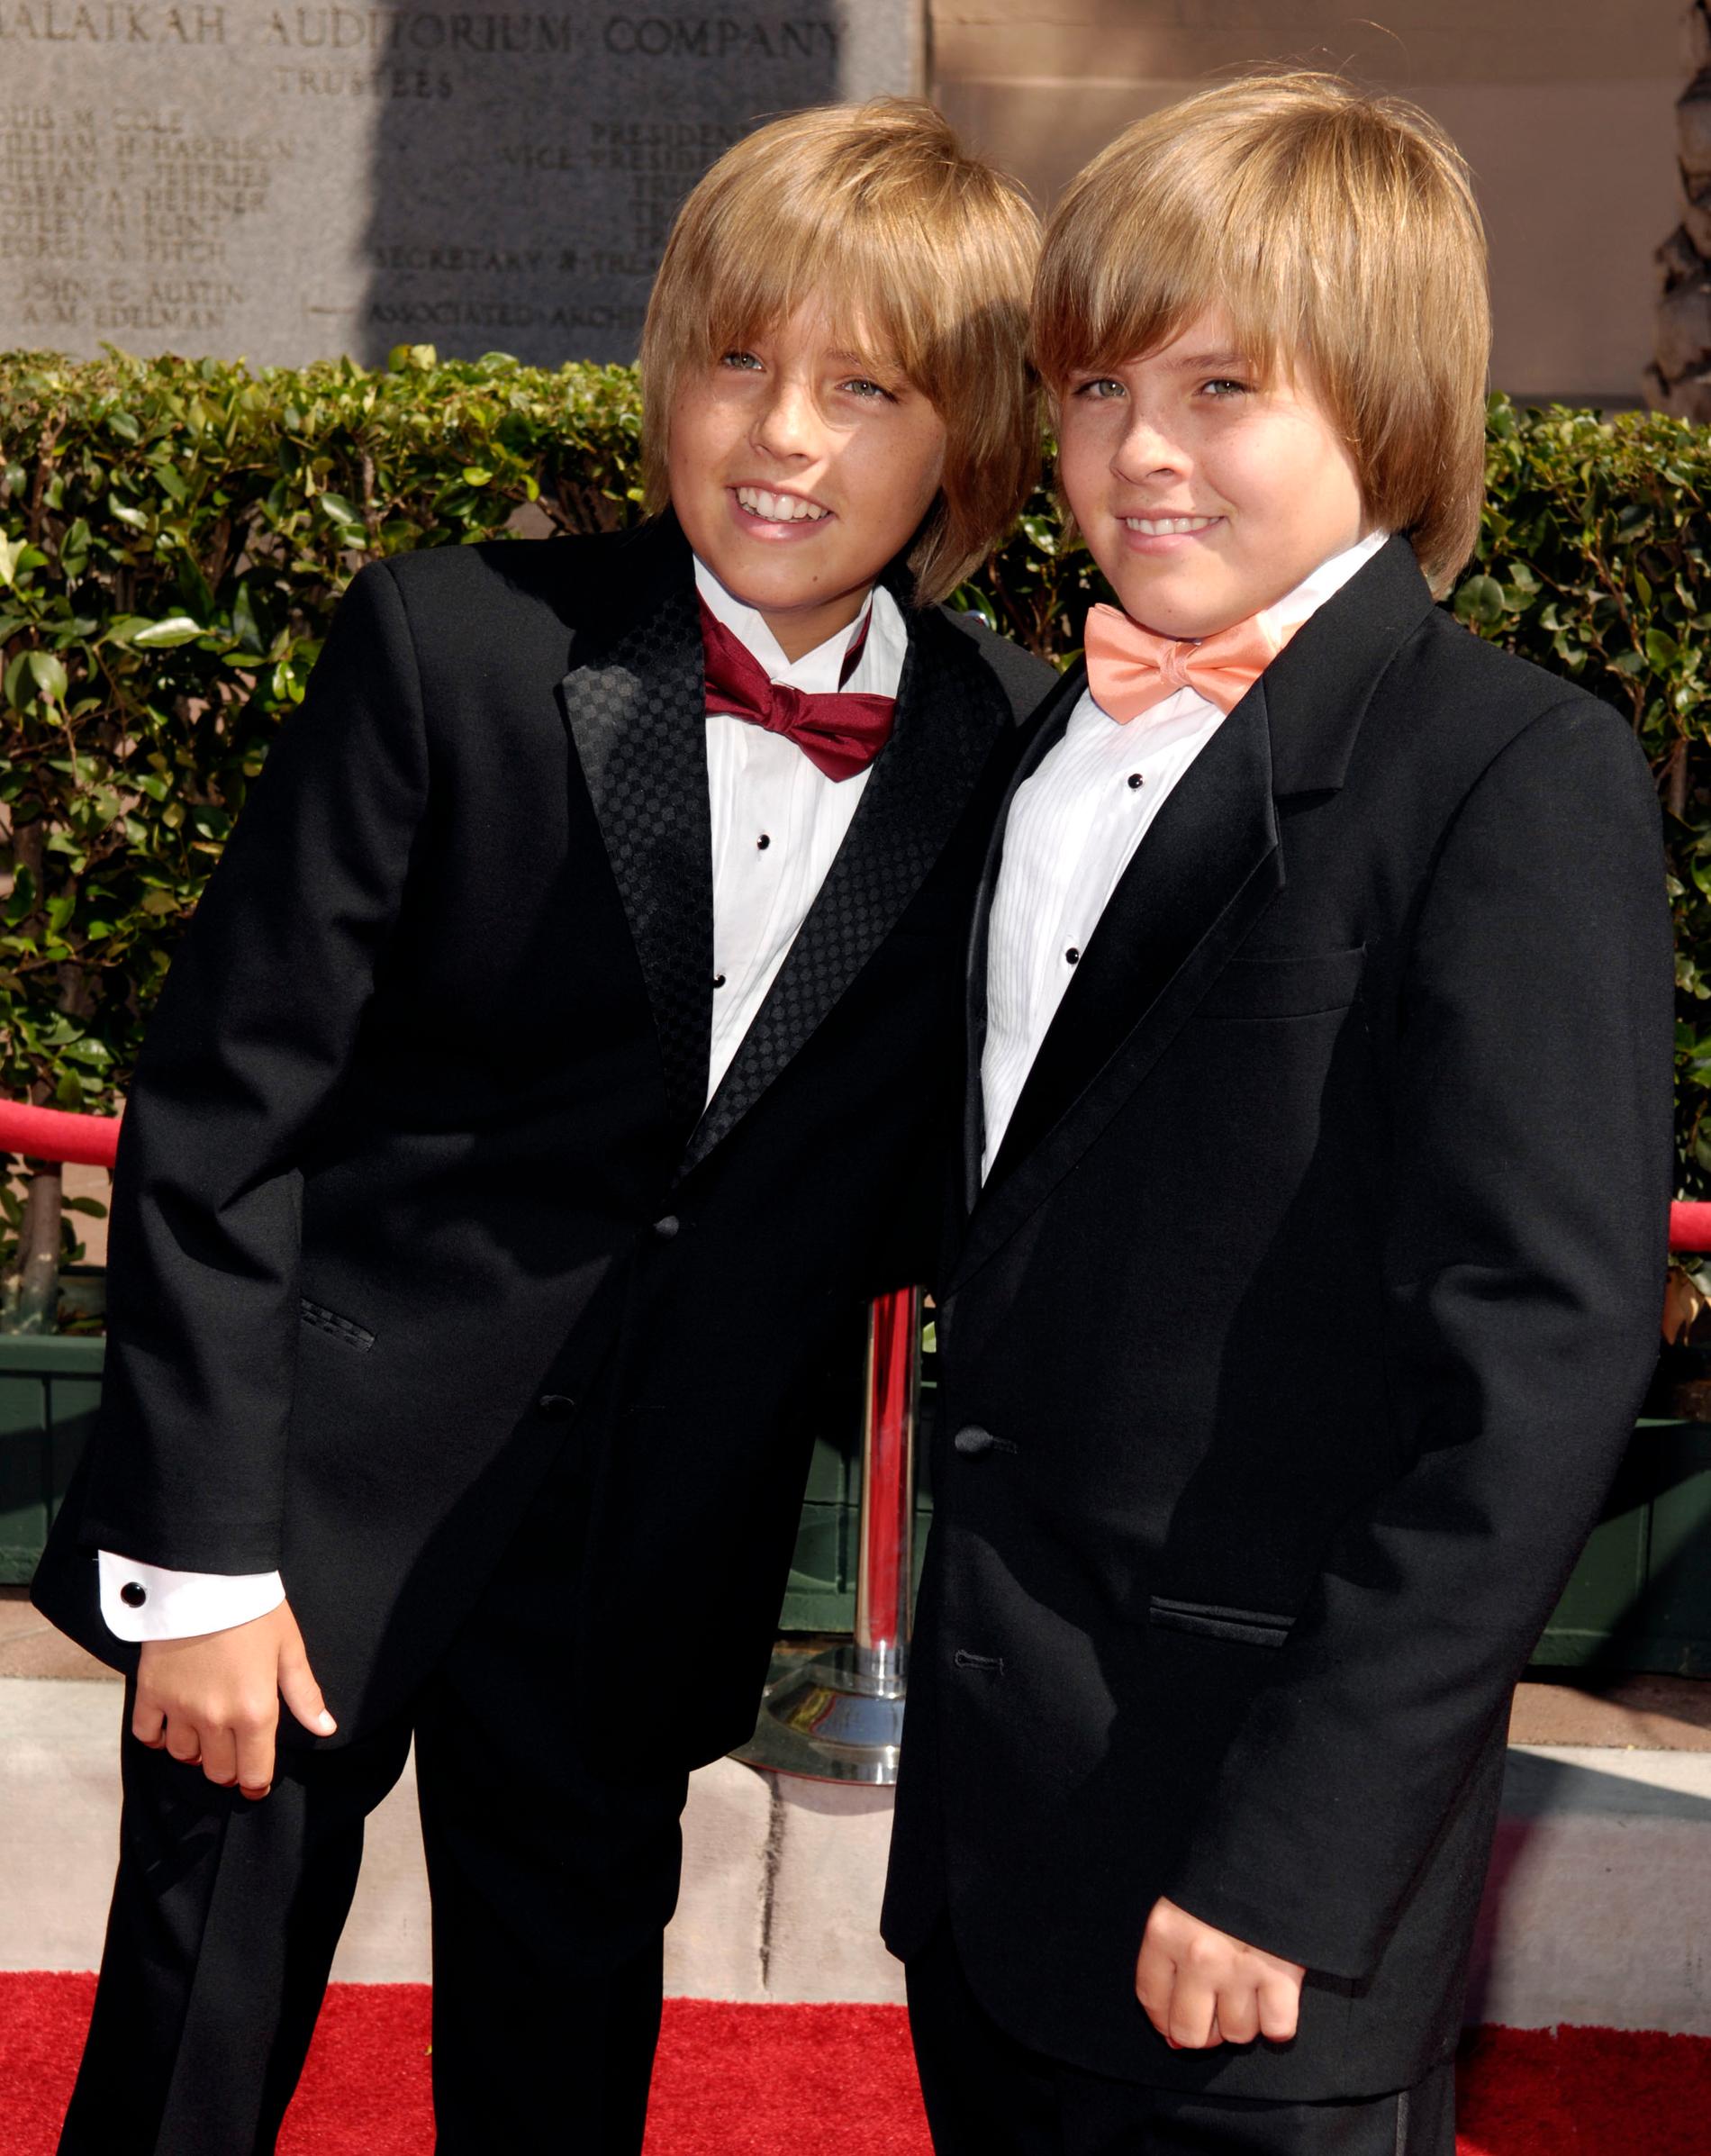 Tvillingbröderna Cole och Dylan Sprouse har också haft den egna tv-serien ”Zack och Codys ljuva hotelliv”